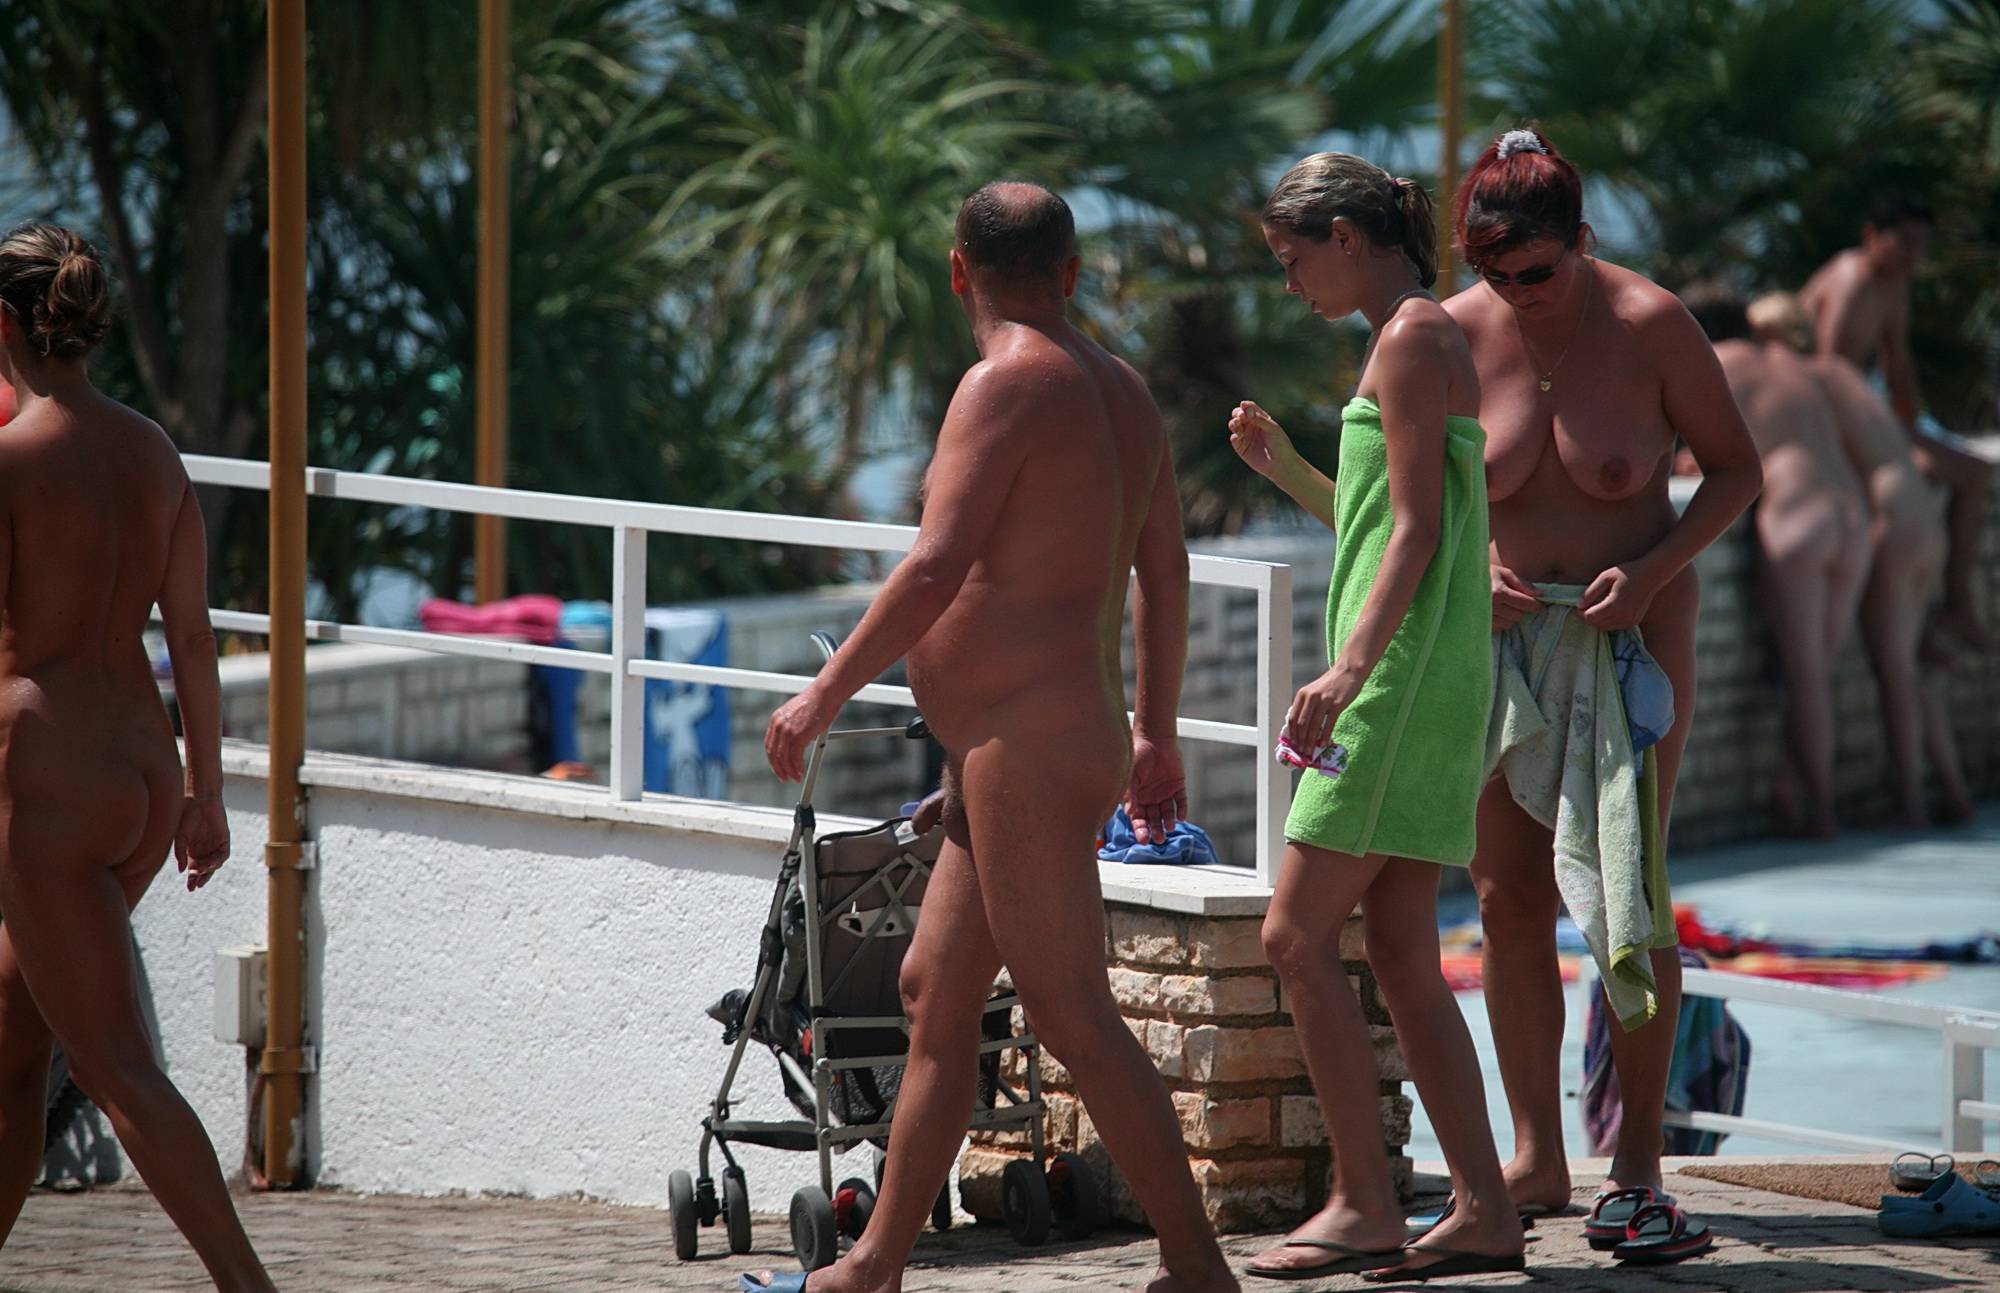 Boardwalk Biking Nudists - 2